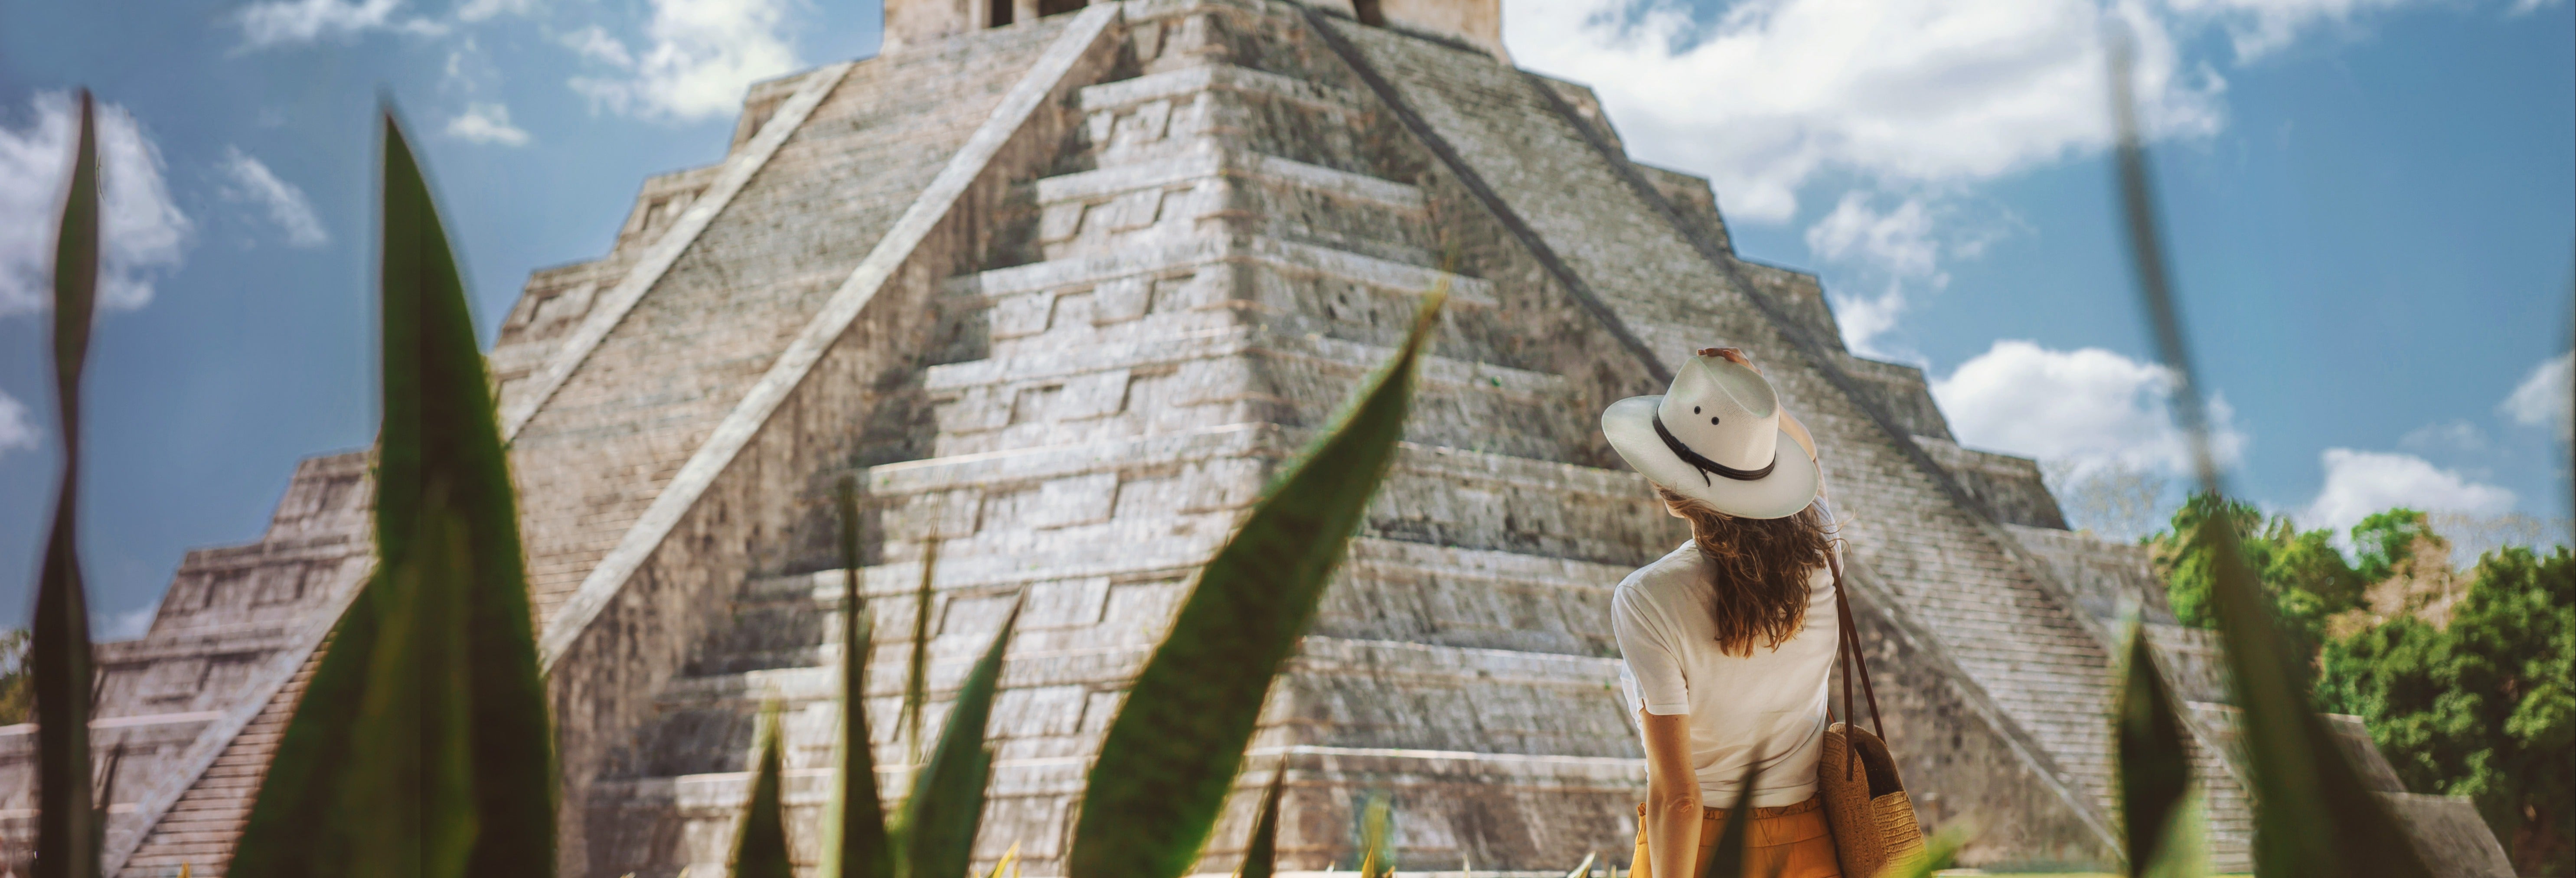 Excursão a Chichén Itzá